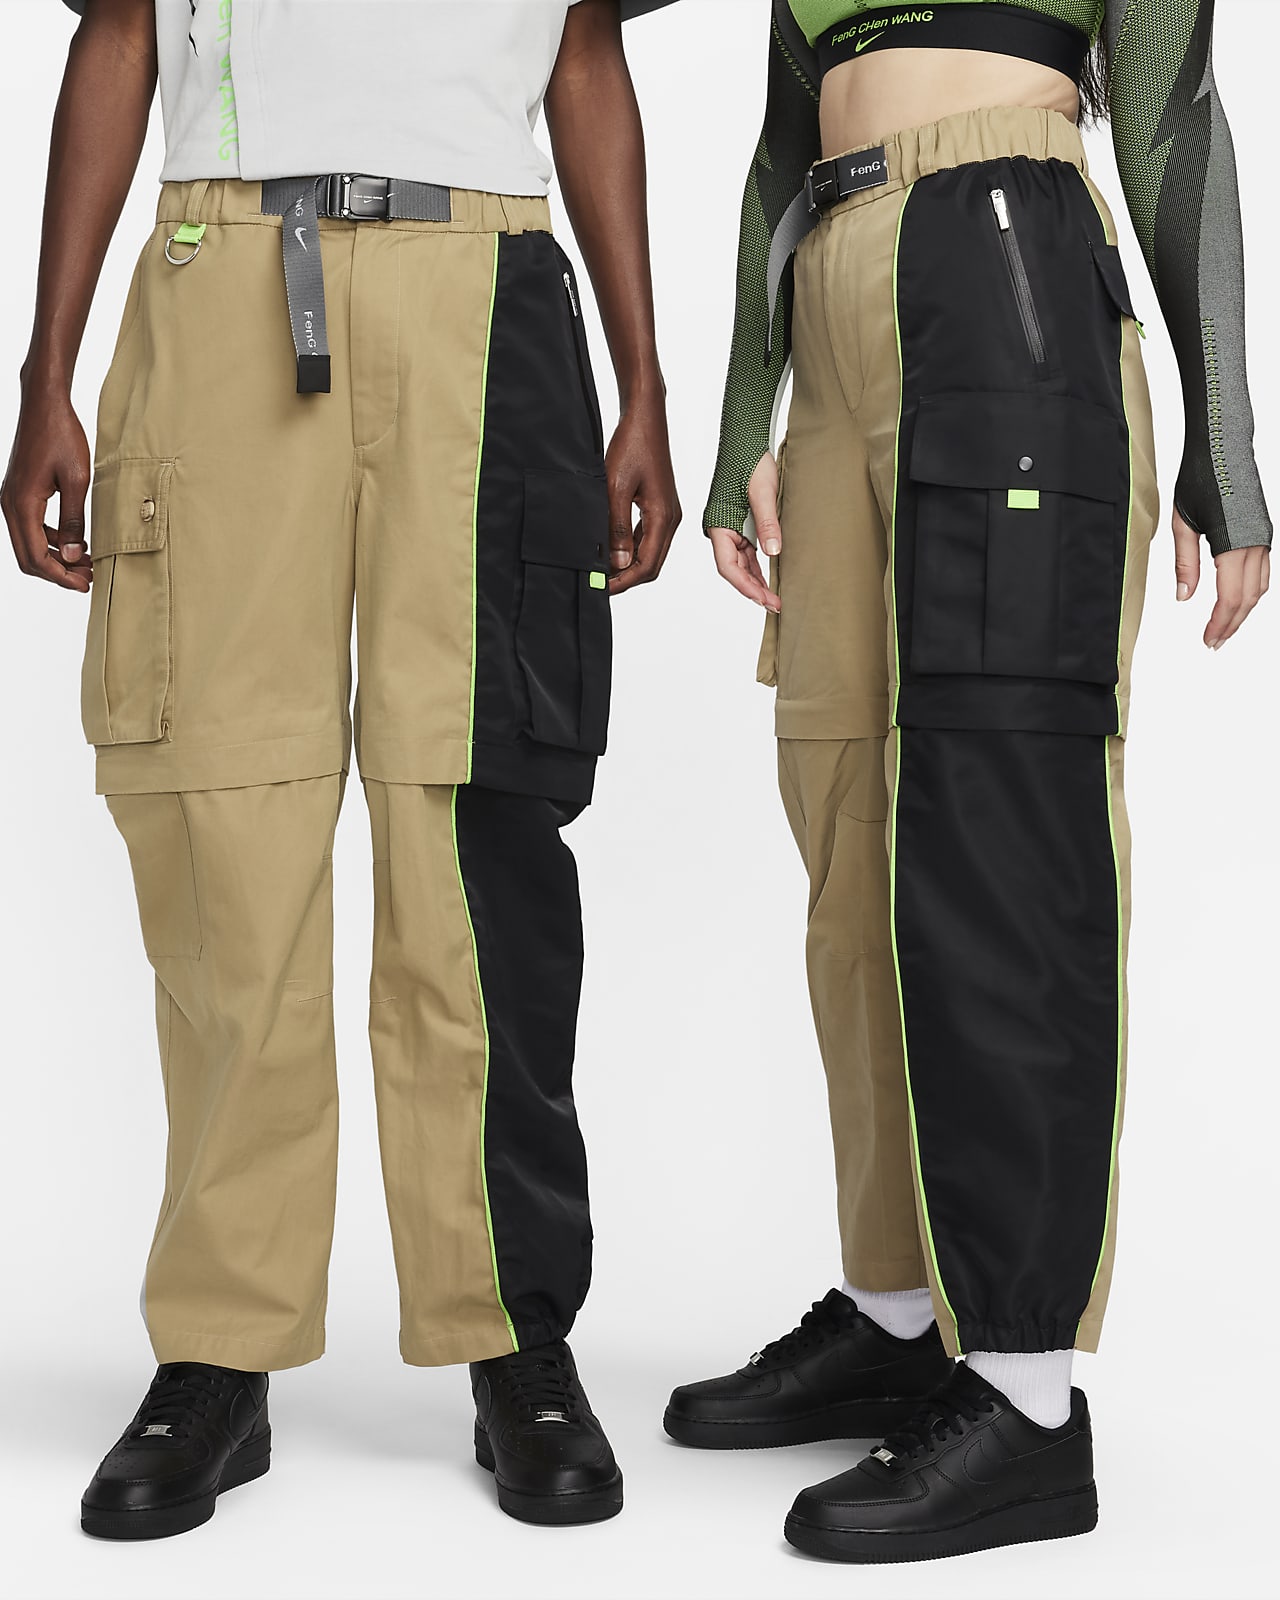 Nike x Feng Chen Wang Cargo Pants.